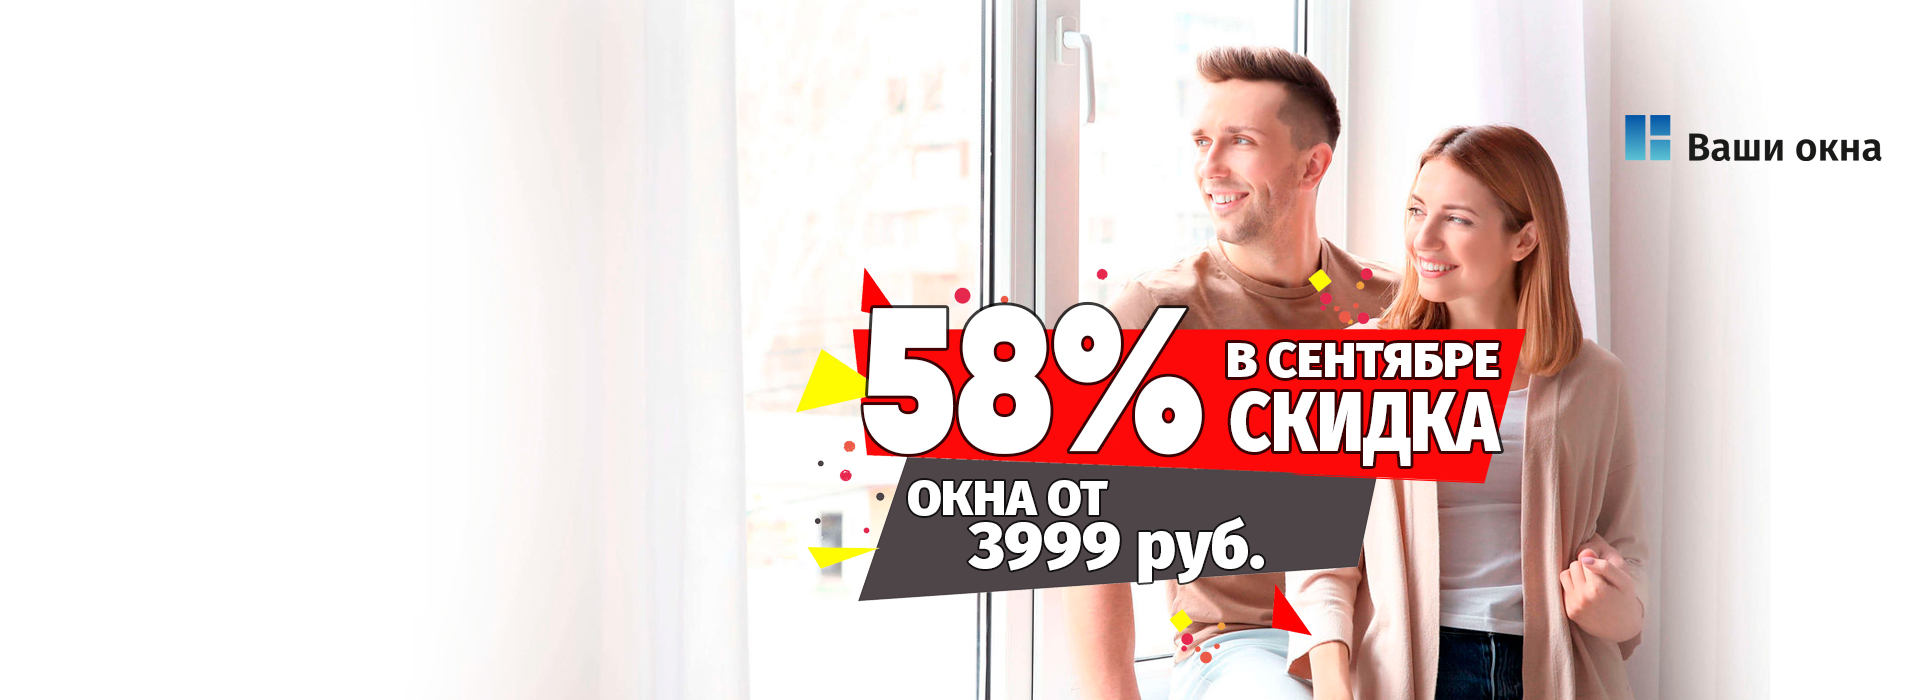 Весь сентябрь окна 3999 рублей!